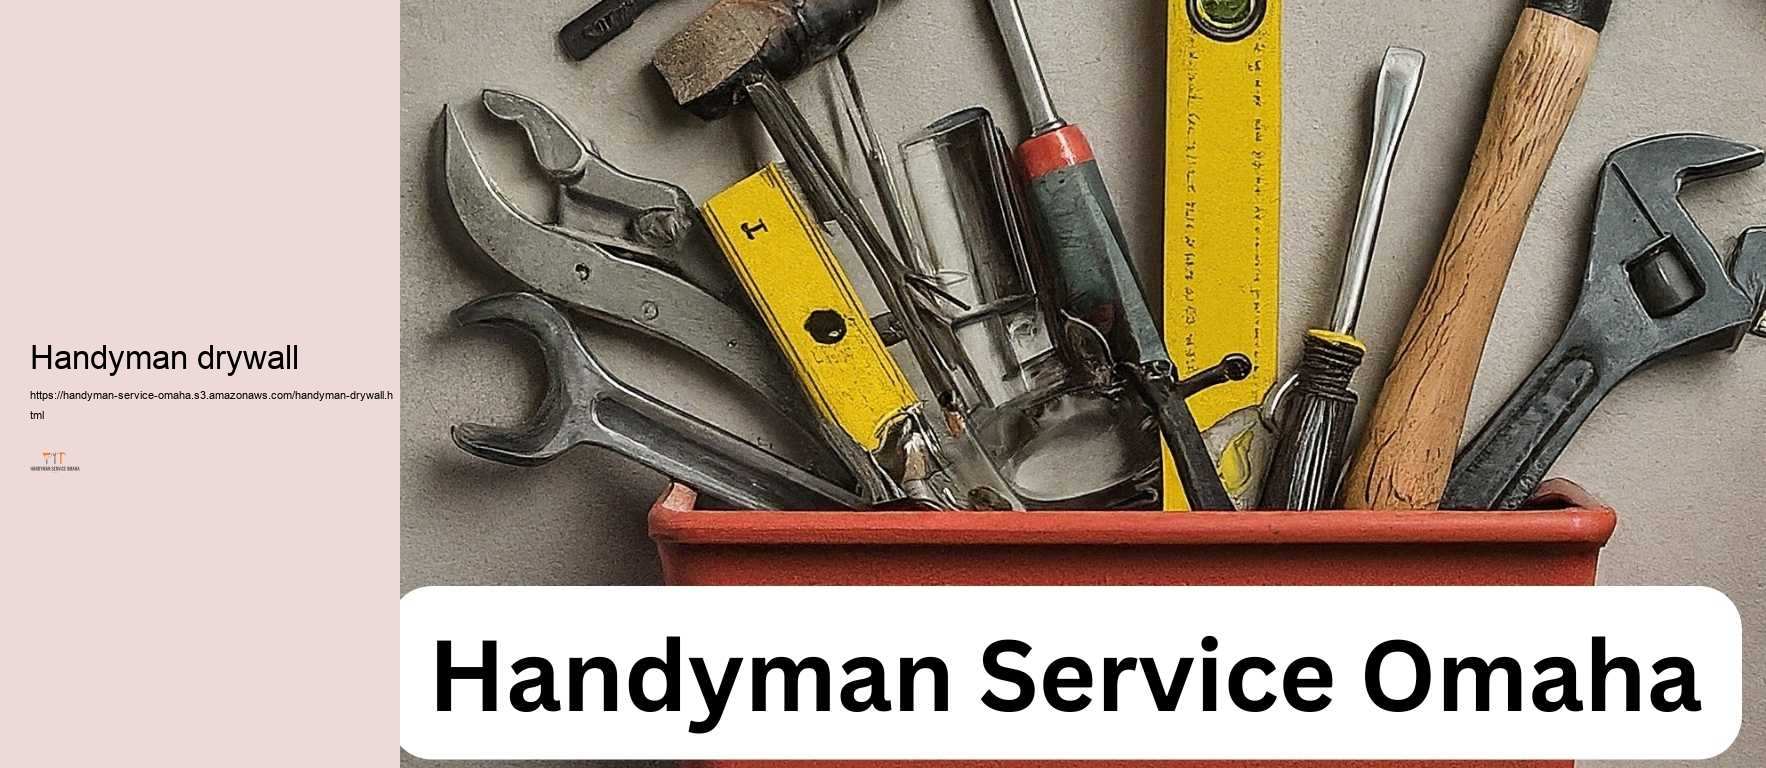 Handyman drywall